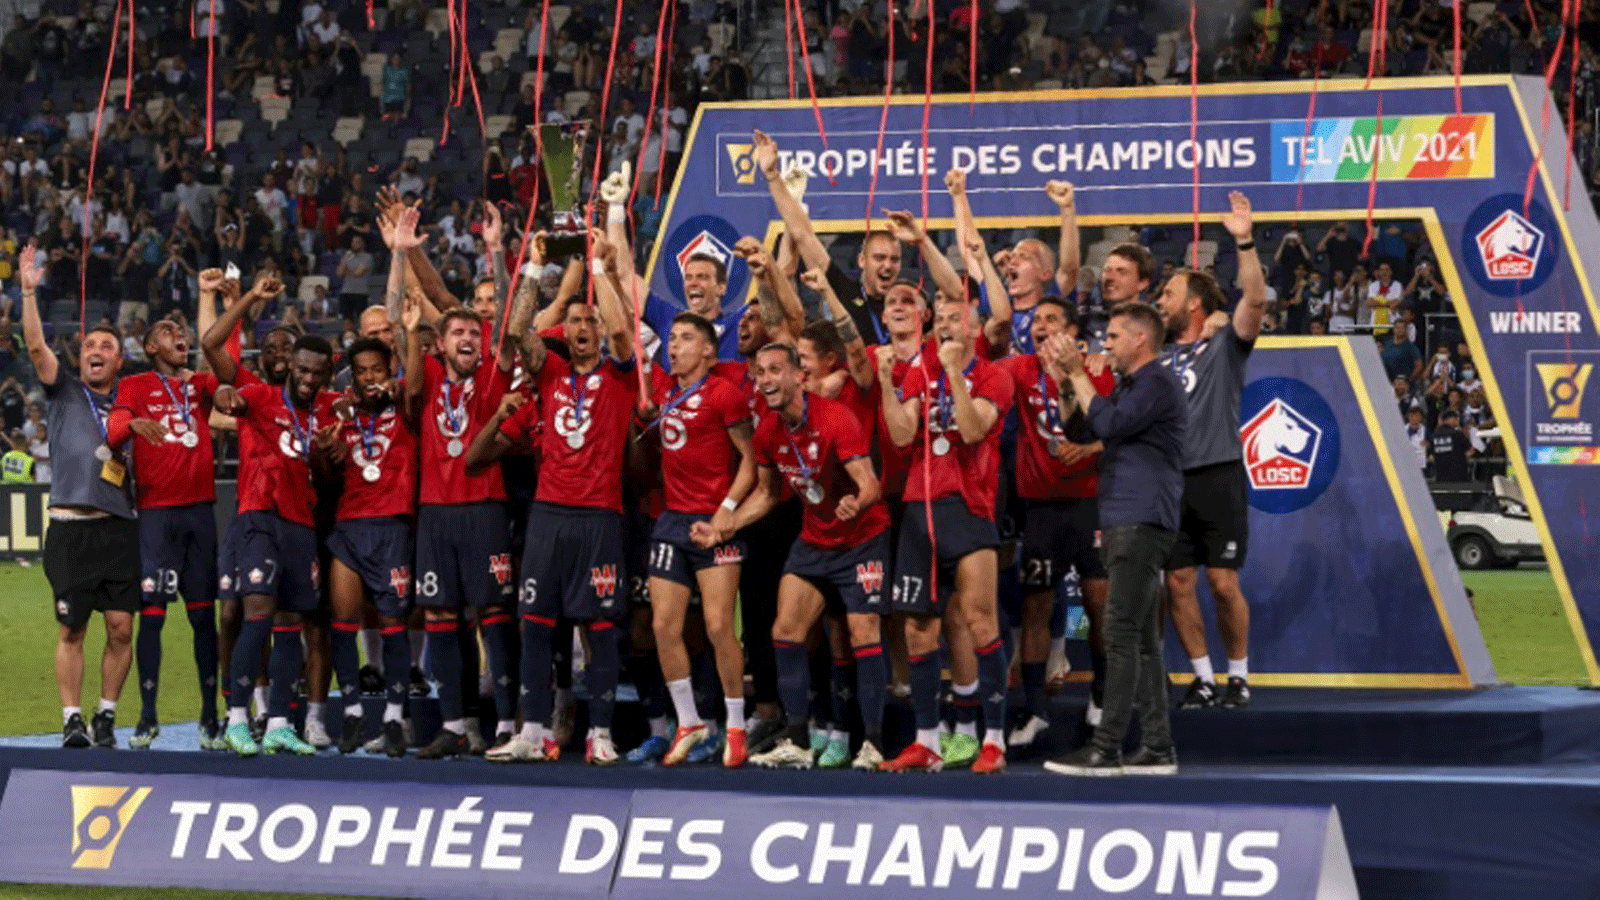 لاعبو ليل يحتفلون بلقب كاس الأبطال الفرنسية لكرة القدم عقب الفوز على باريس سان جرمان 1-صفر في تل أبيب في الاول من آب/أغسطس 2021.